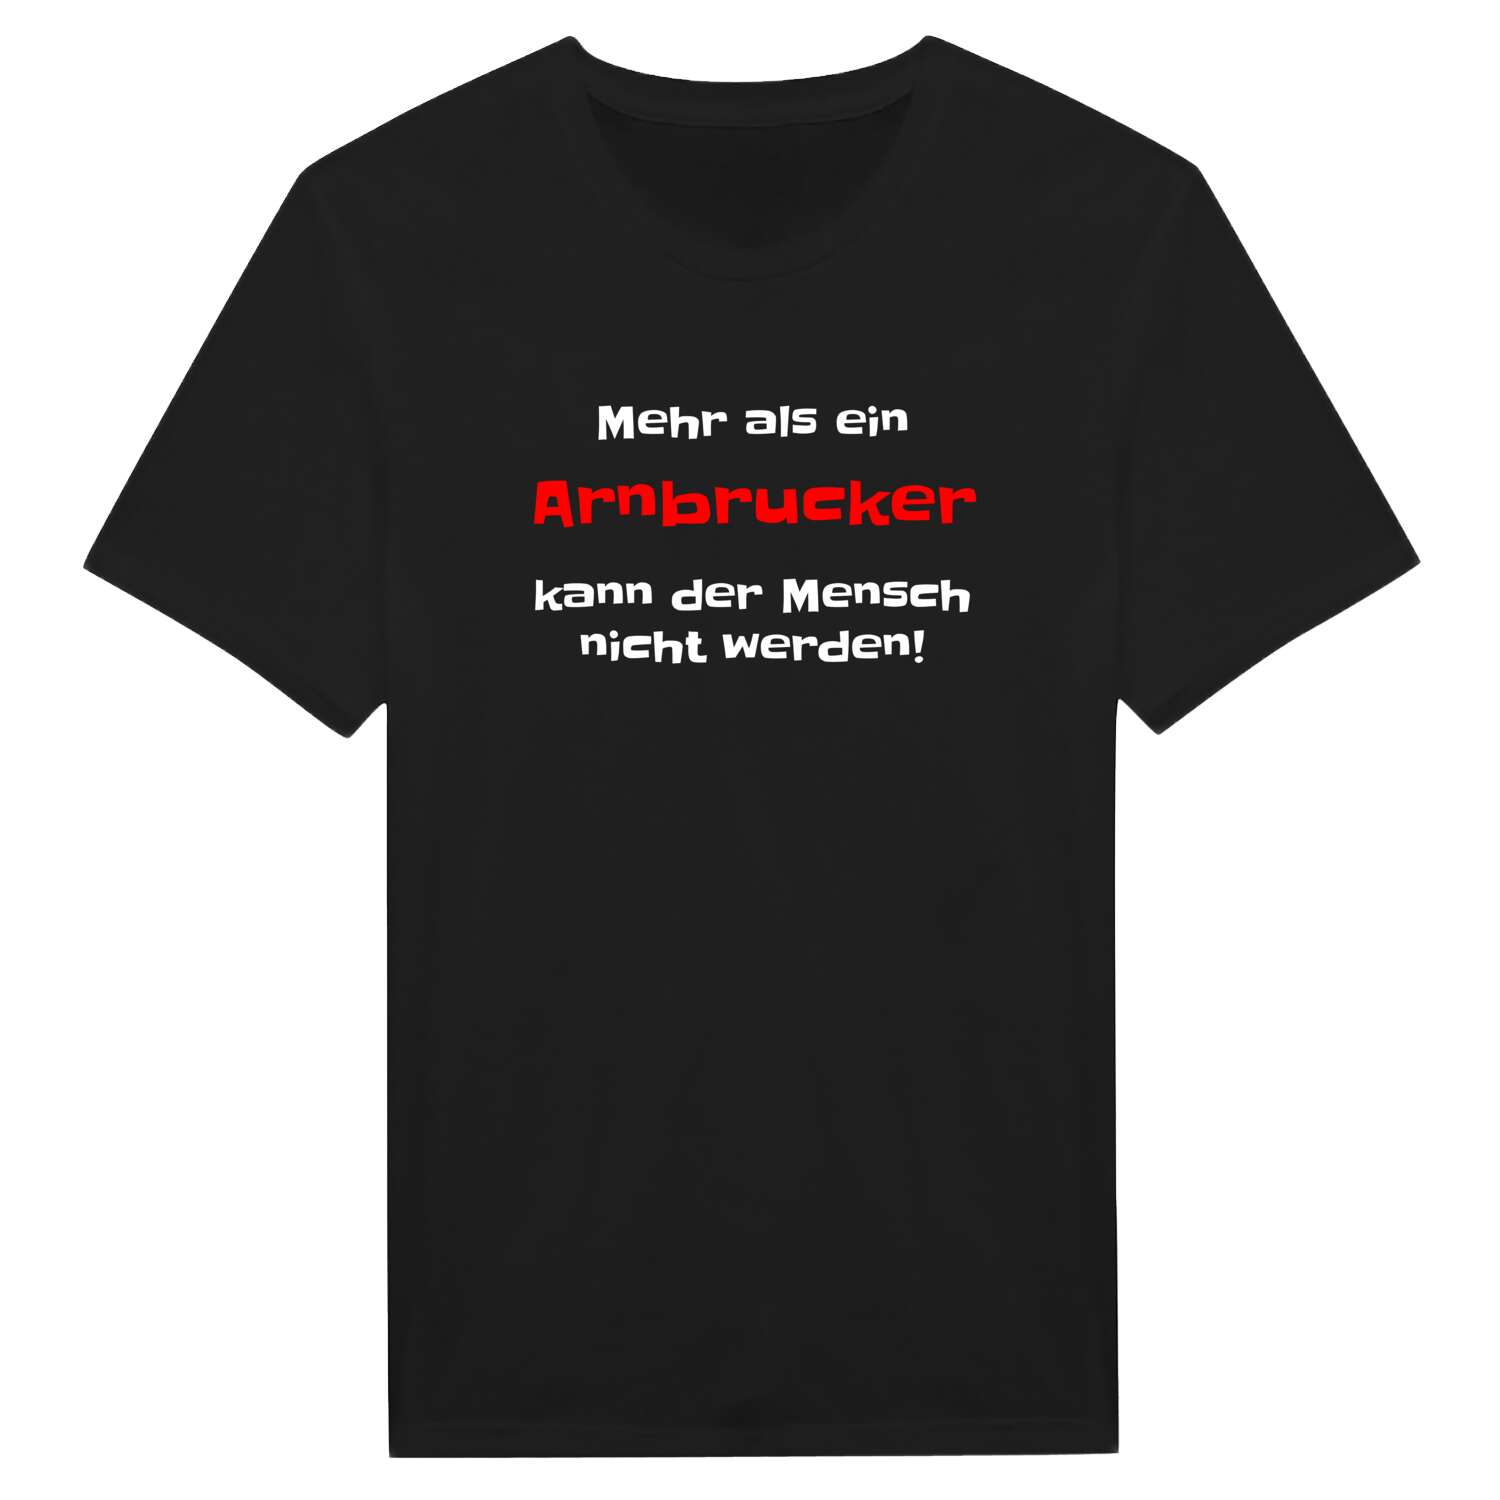 Arnbruck T-Shirt »Mehr als ein«